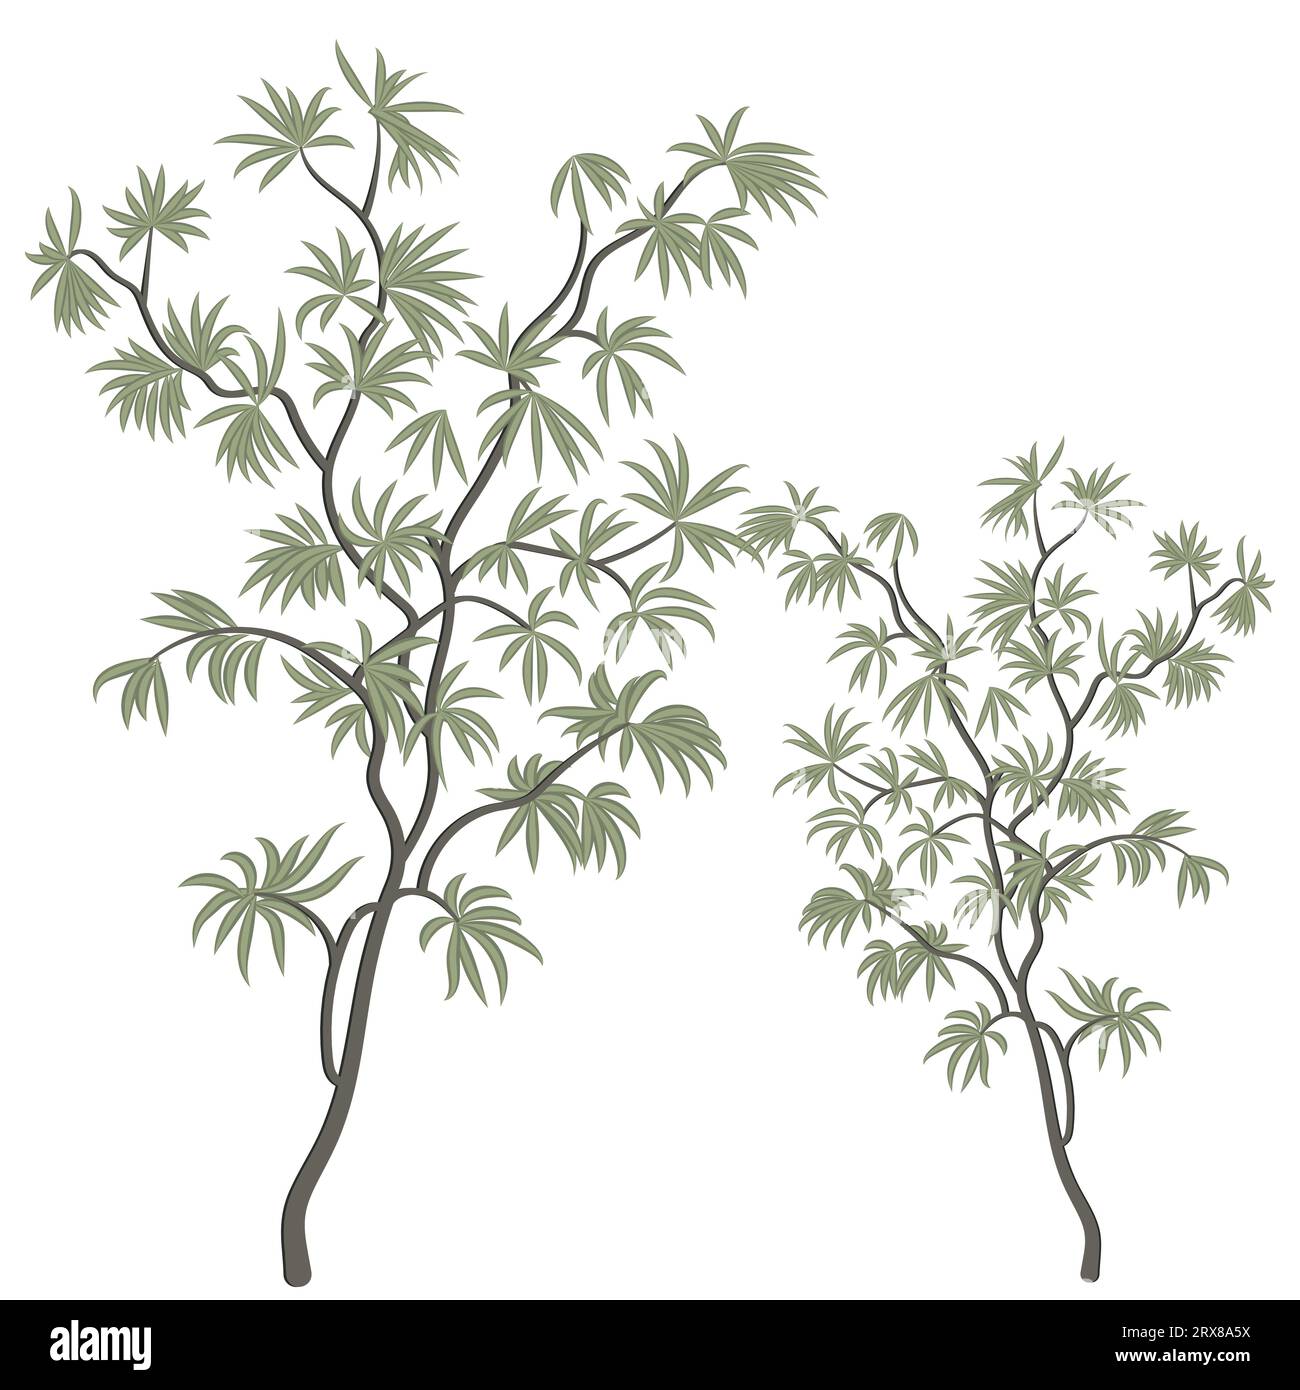 Eine Zeichnung von zwei Bäumen mit grünen Blättern Stock Vektor